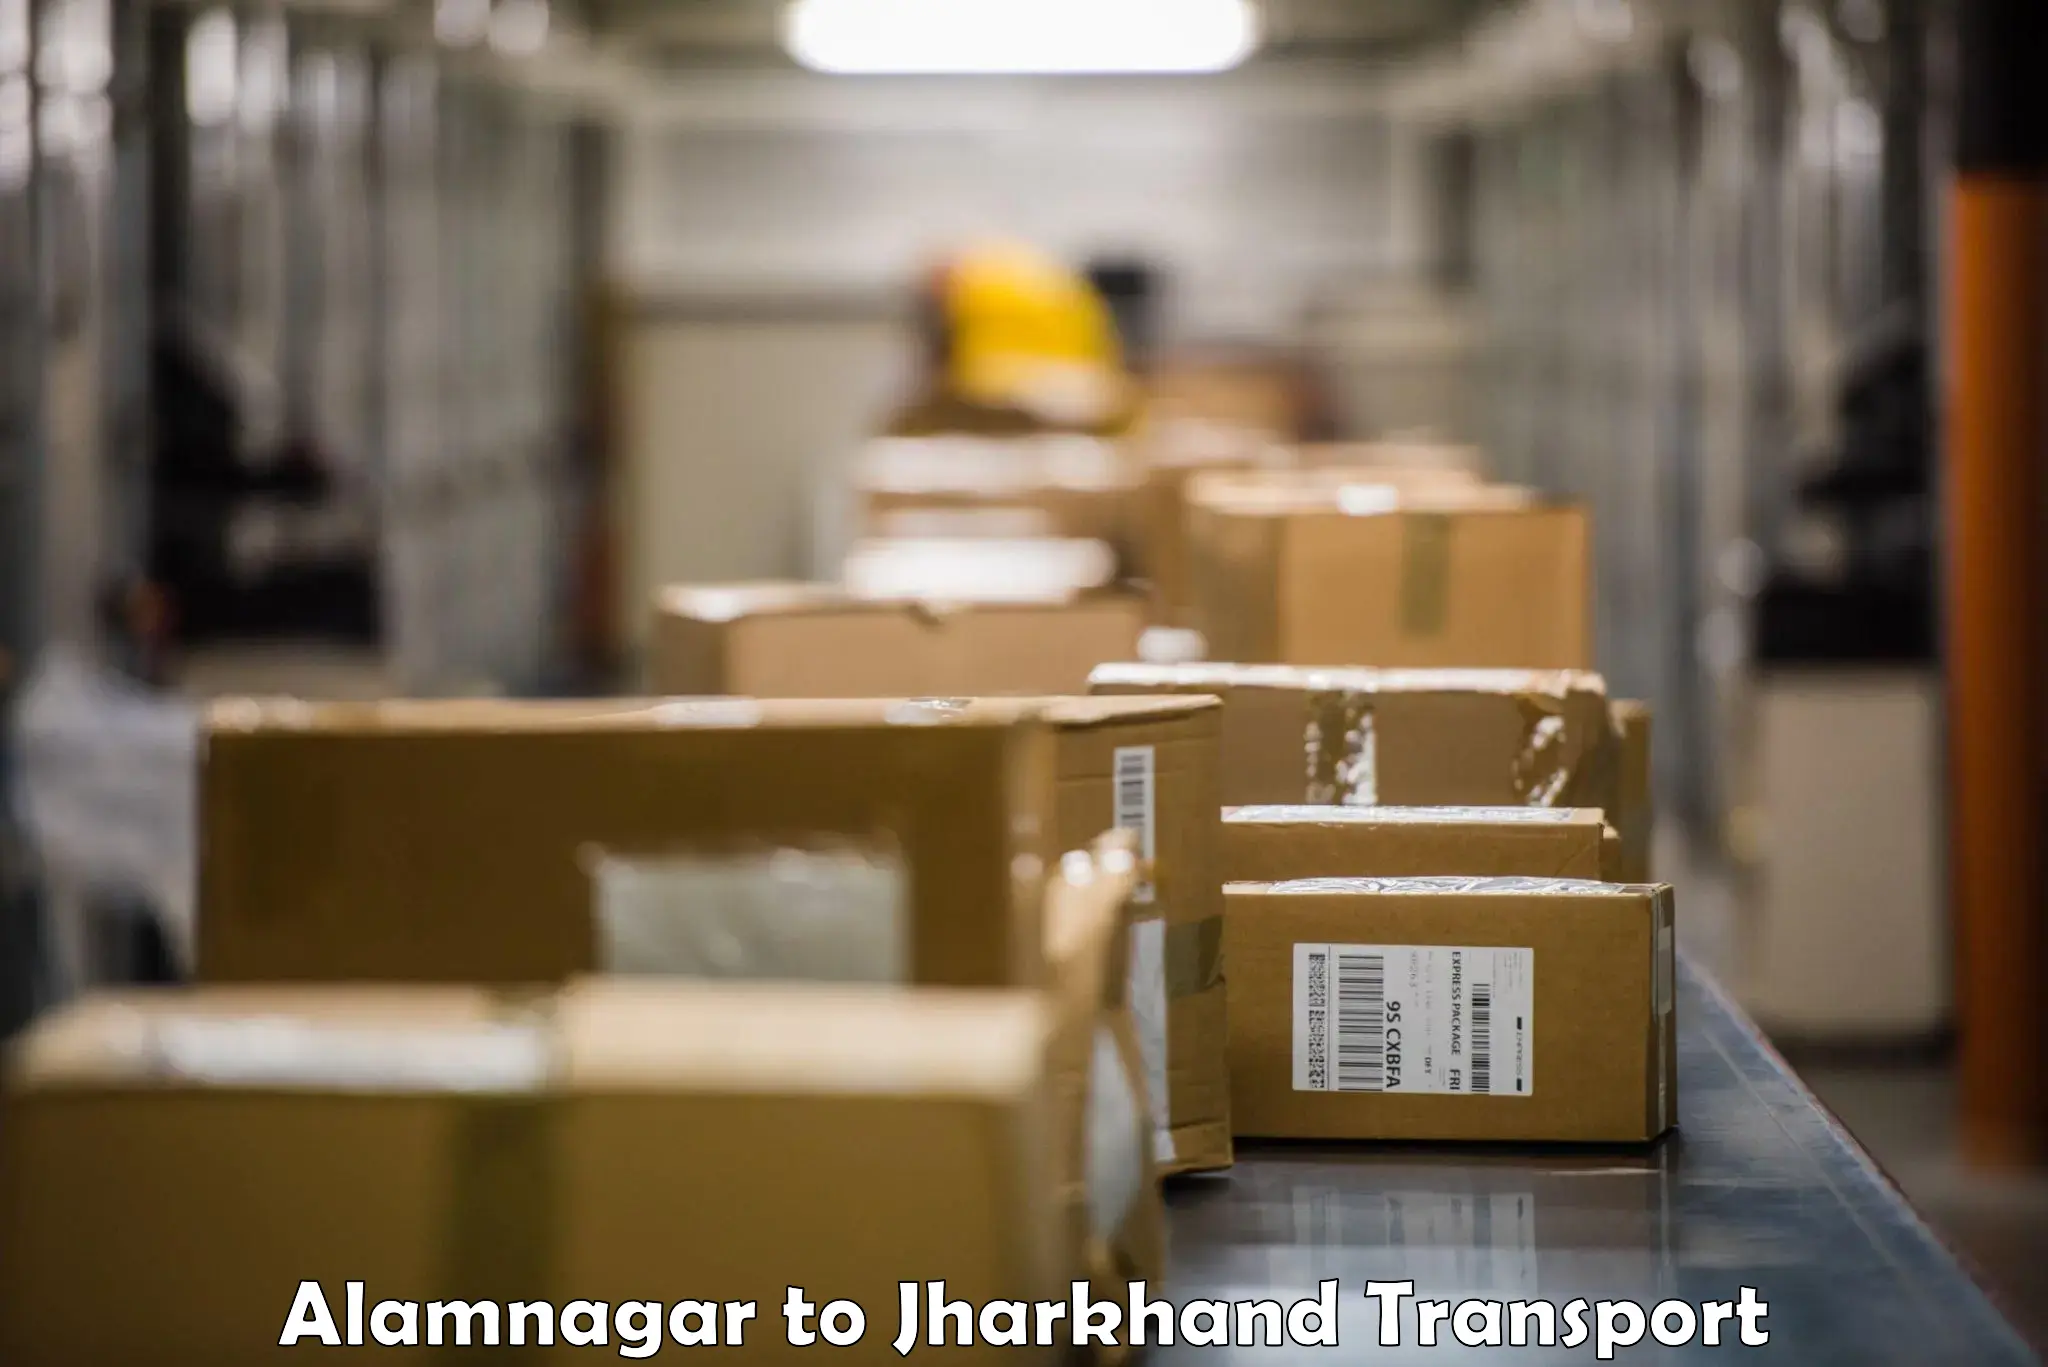 Delivery service Alamnagar to Boarijore